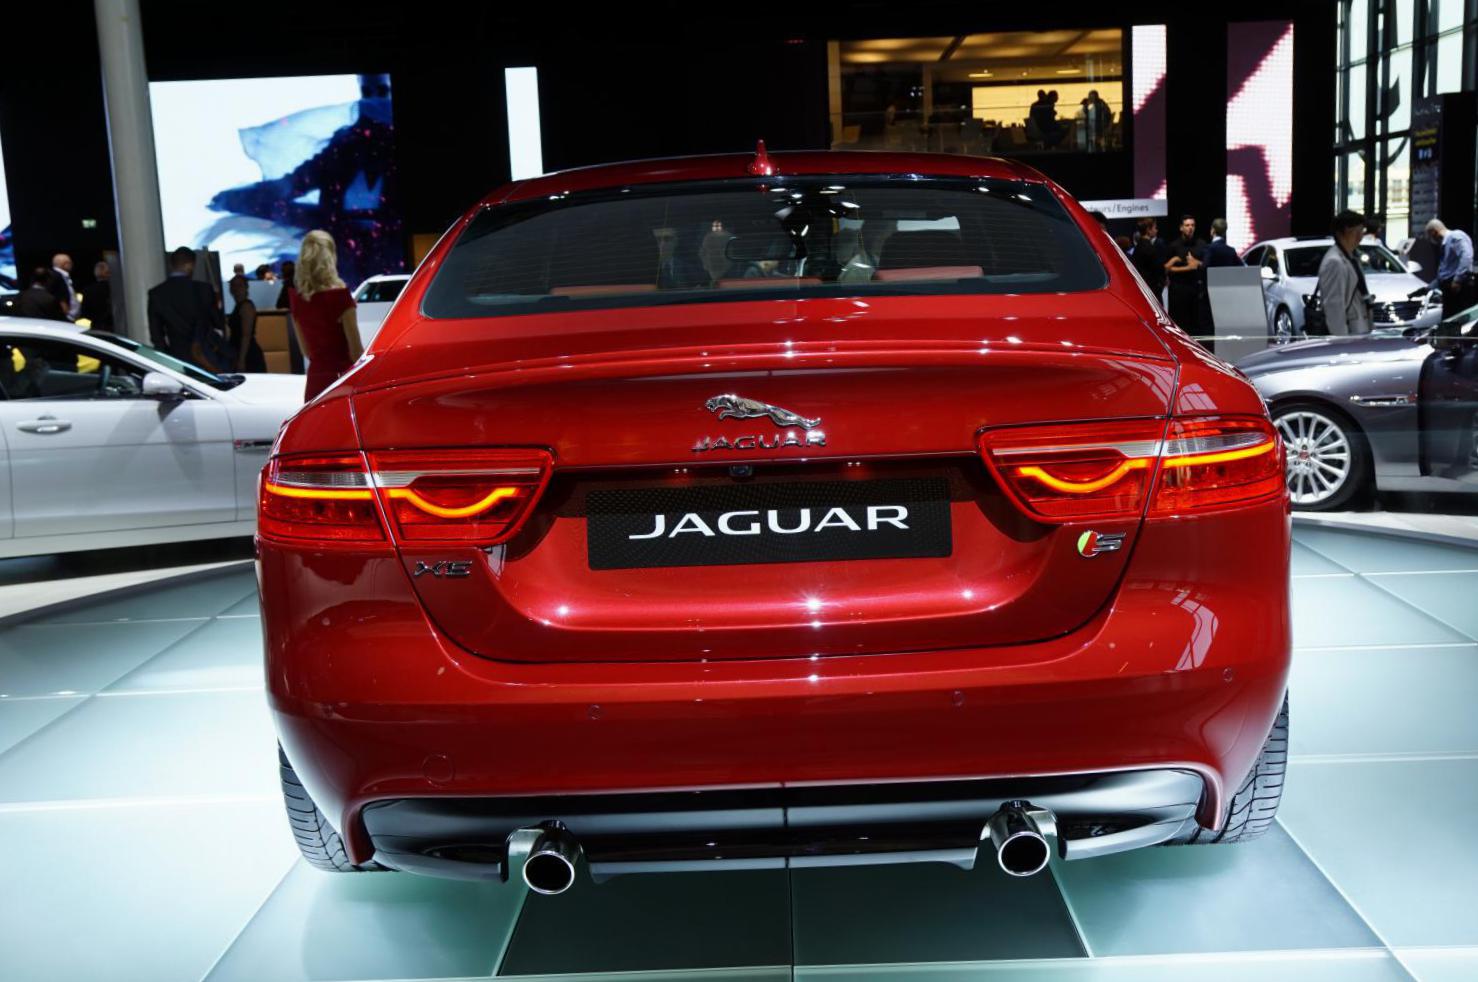 XE Jaguar model sedan